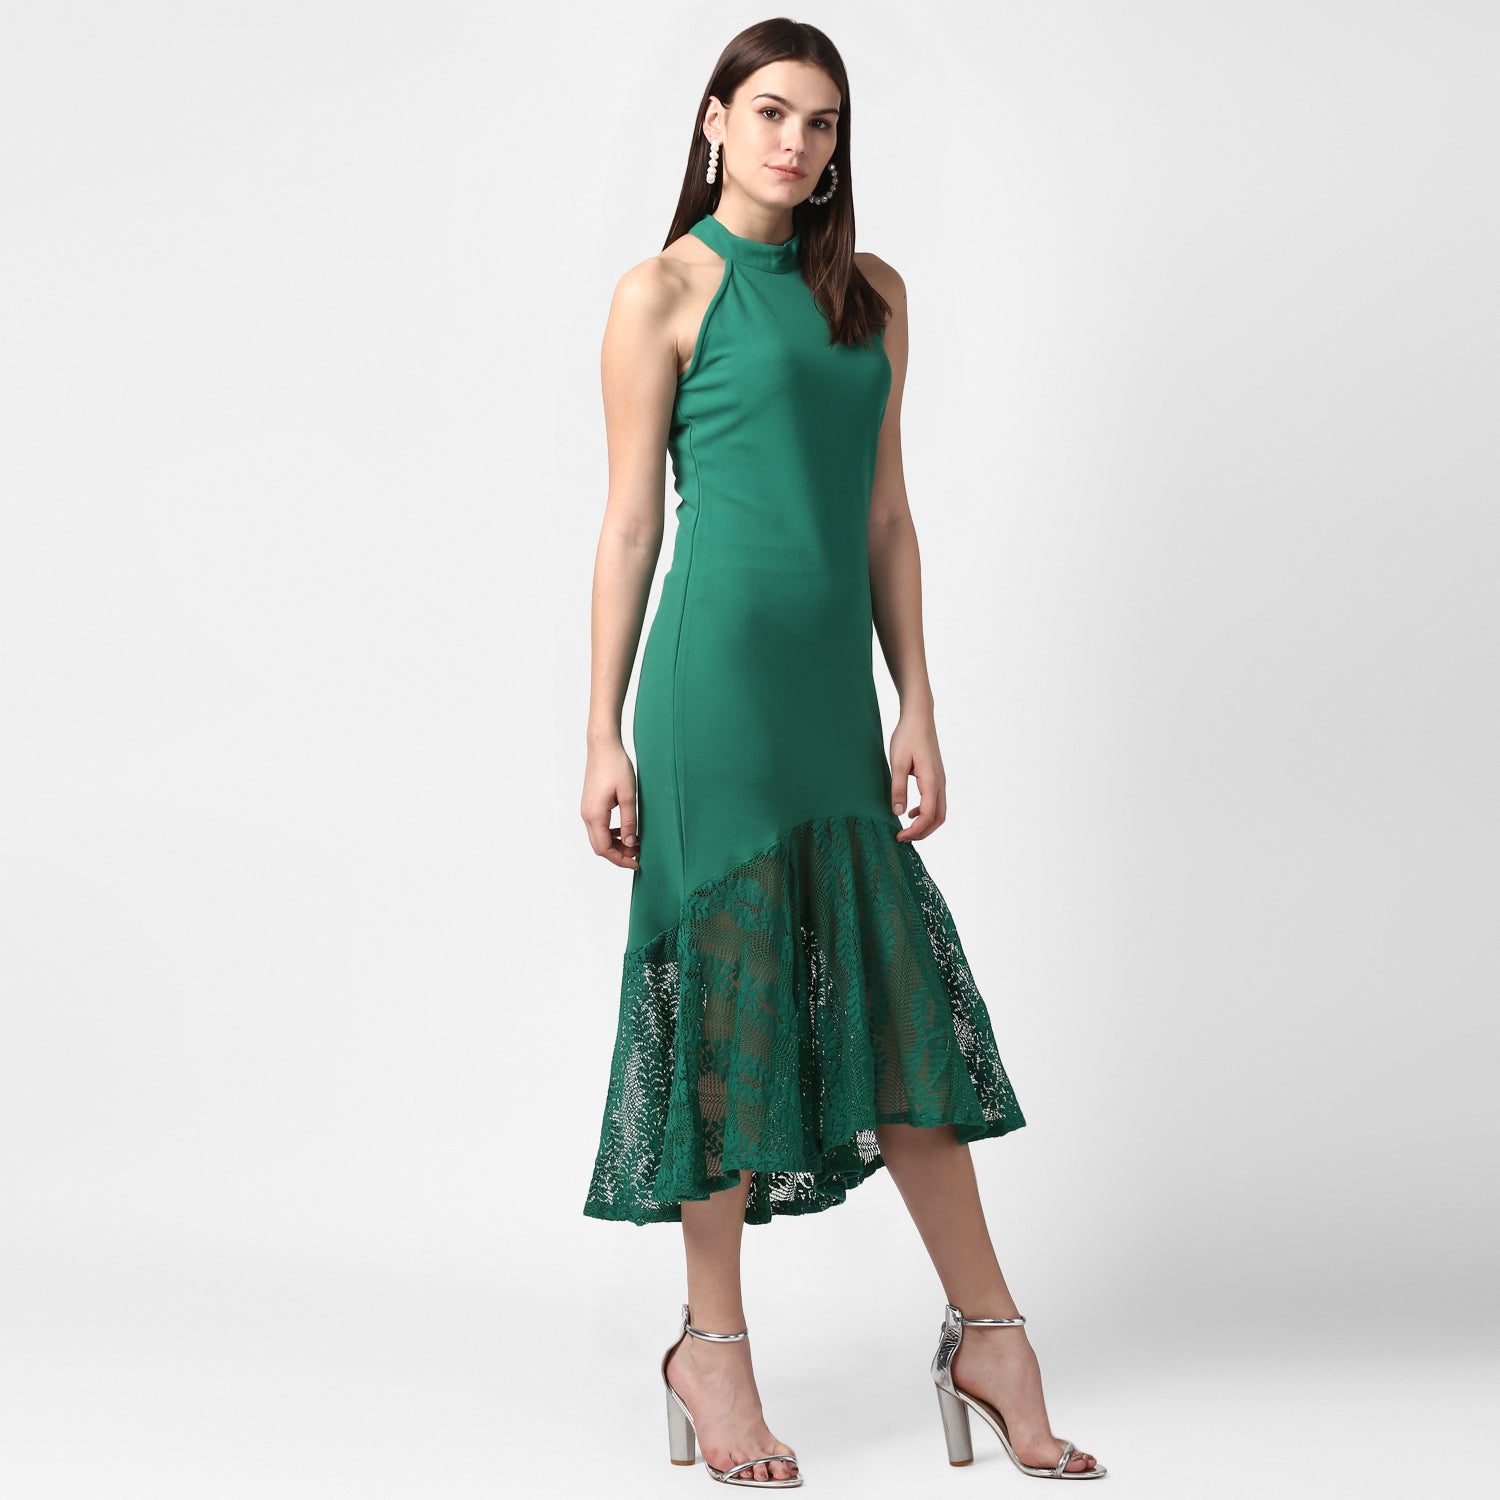 Women's Green Asymmetrical Lace Dress - StyleStone